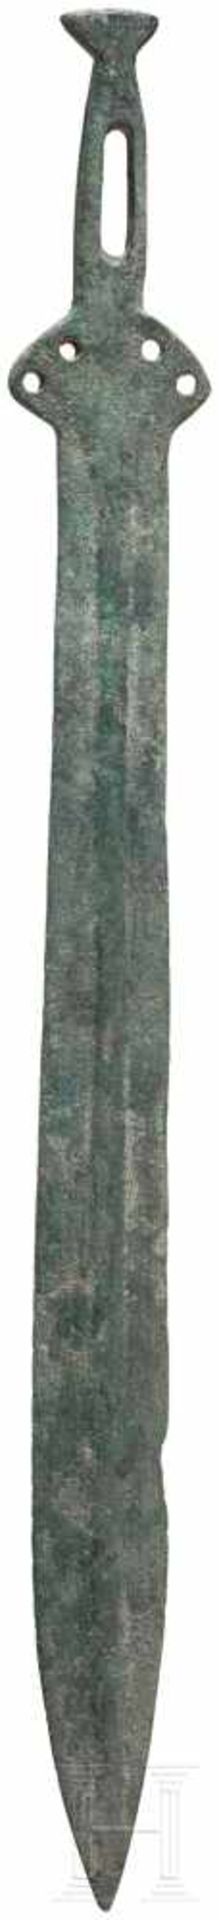 Griffzungenschwert, Frankreich, Späte Bronzezeit, 11. - 10. Jhdt. v. Chr.Bronze. Die Klinge des